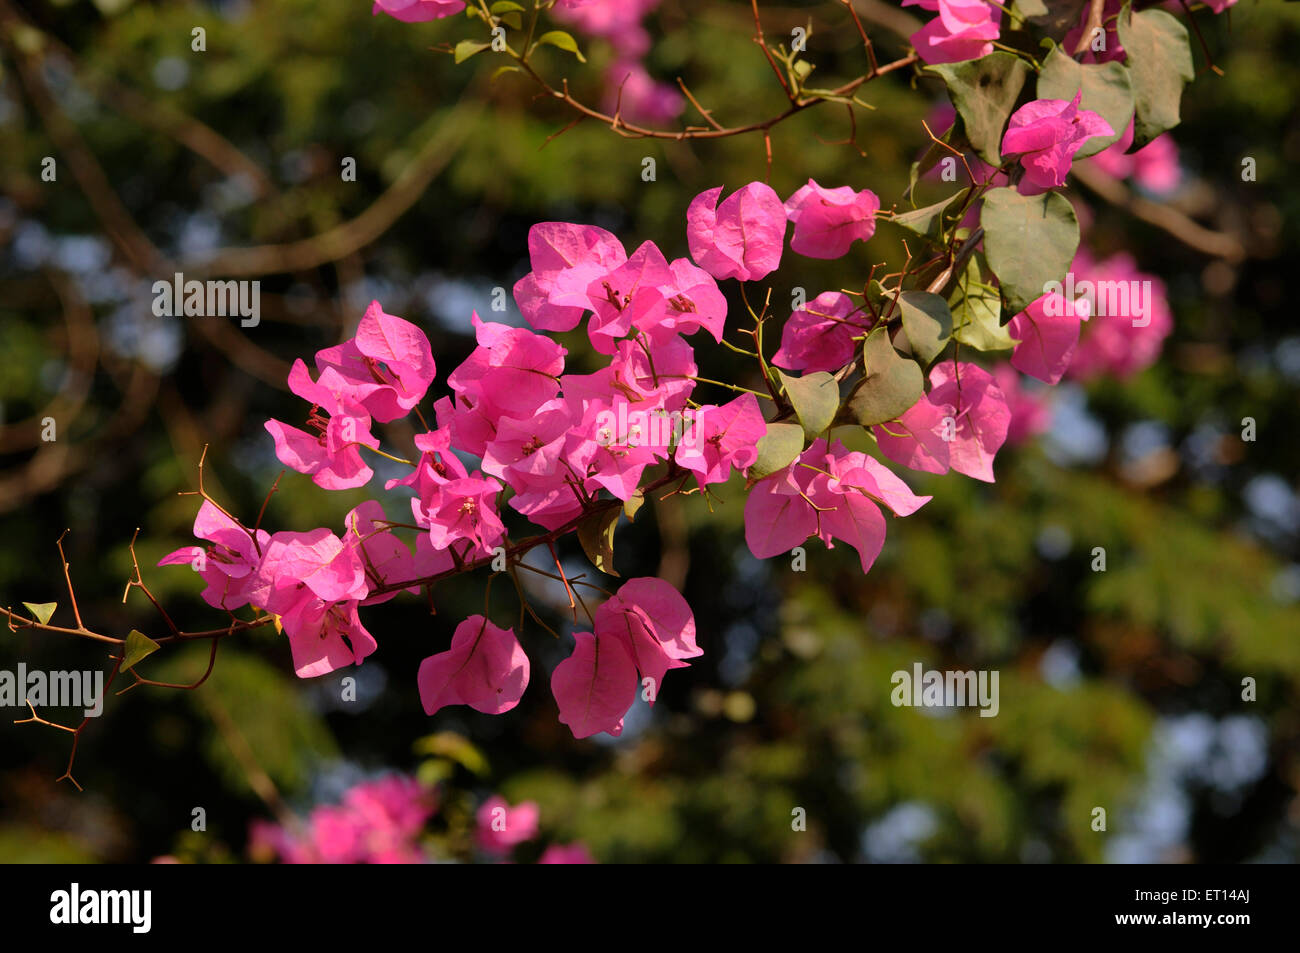 Bougainvillea plante de fleurs roses Banque D'Images